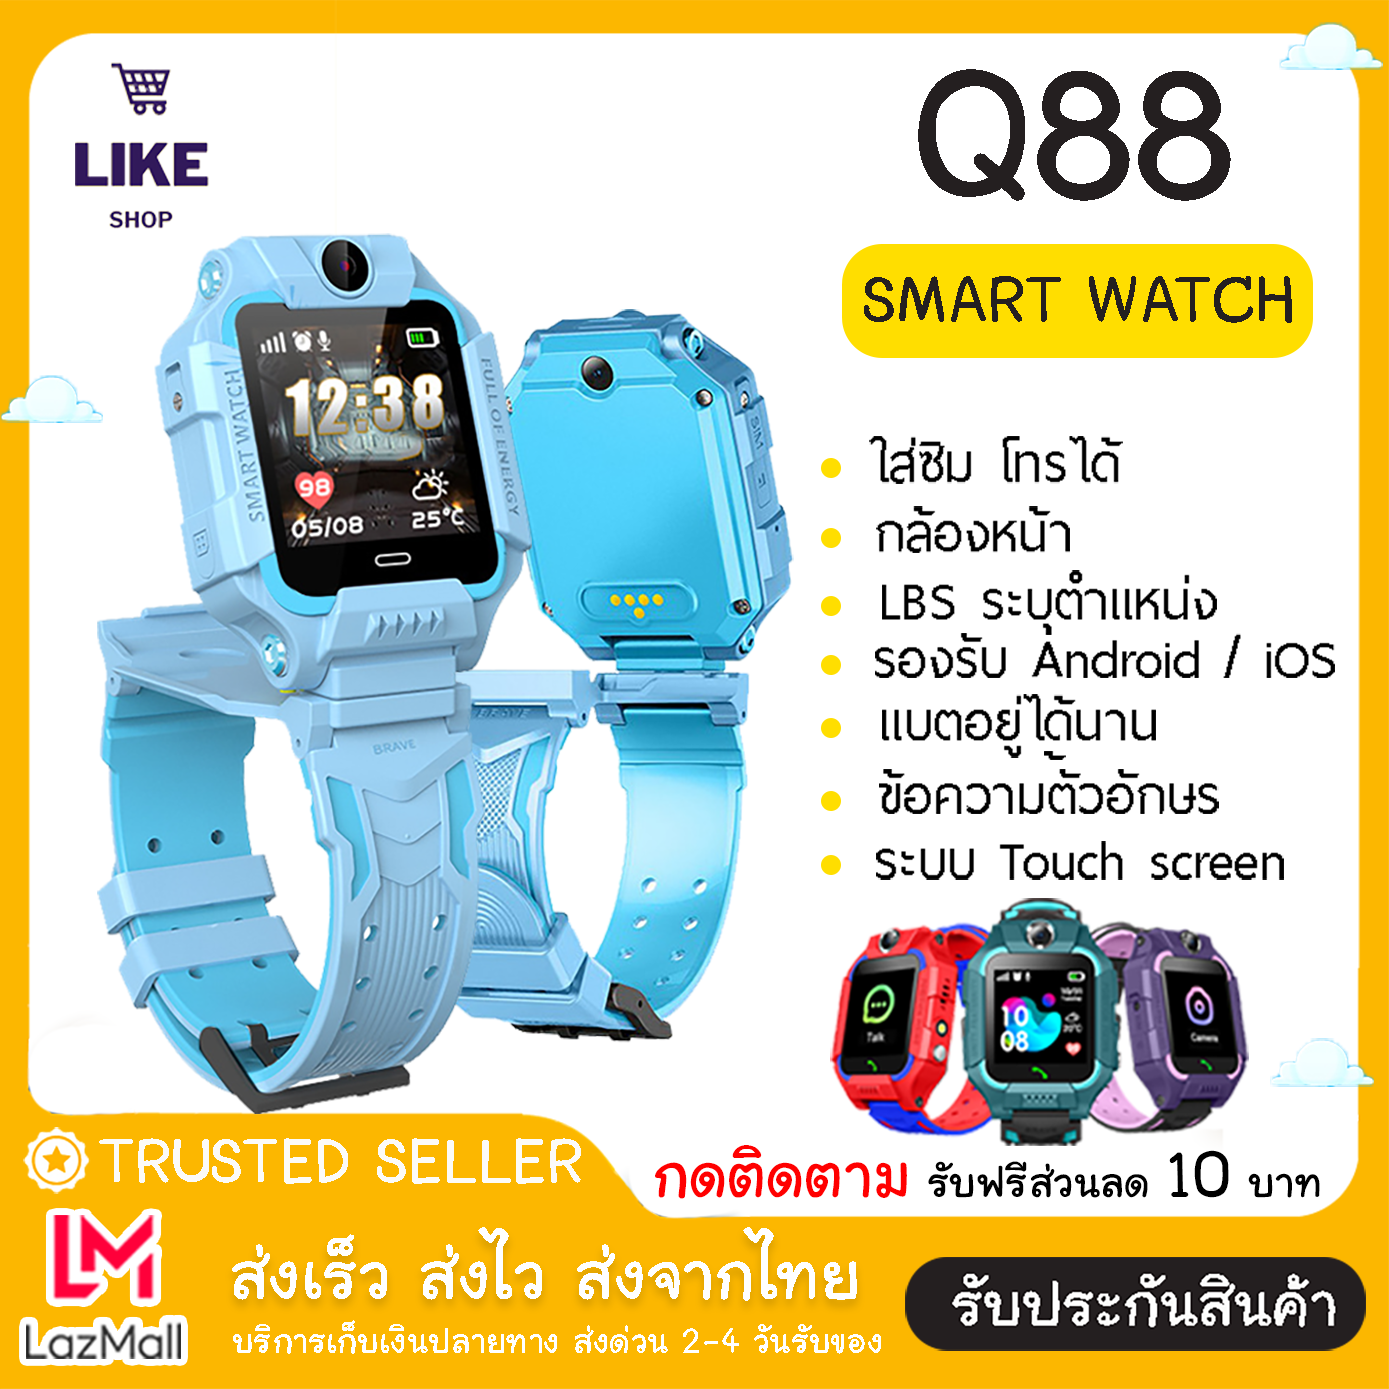 [ไทย] Like-Shop นาฬิกาเด็ก Smart Watch Q88 โทรได้ ใส่ซิม กล้อง ยกได้ มีกล้องหลัง นาฬิกาอัจฉริยะ GPS ติดตามตำแหน่ง ประกันสินค้า ป้องกันเด็กหาย สมาทวอช สายรัดข้อมือ นาฬิกาข้อมือดิจิตอล เมนูภาษาไทย (ส่งด่วน 1-3 วัน) มีการรับประกัน